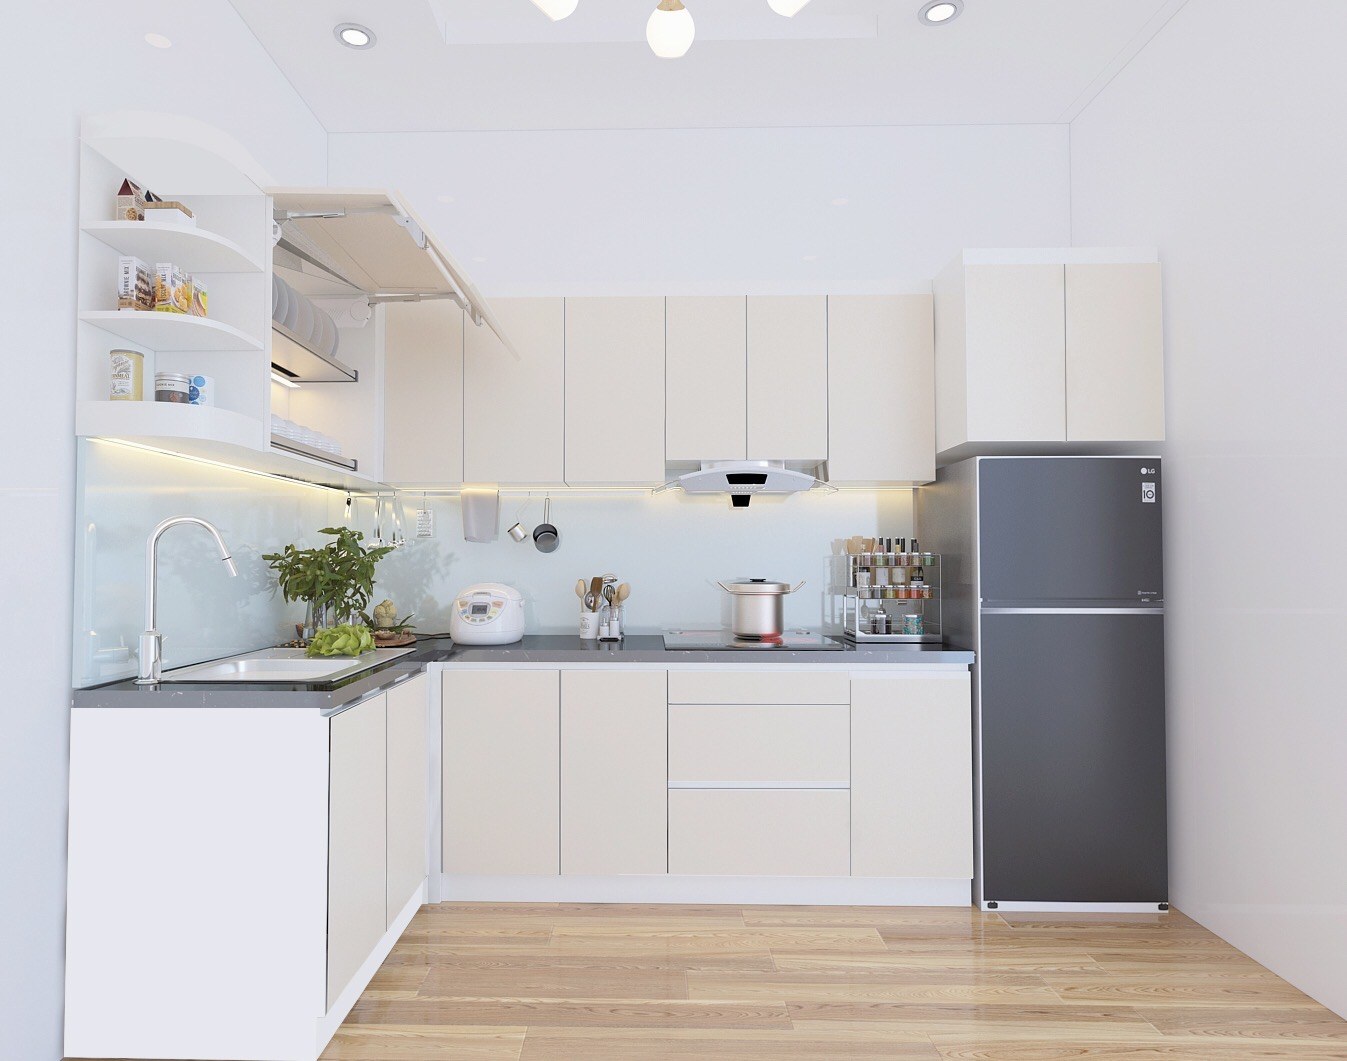 Với những tấm ảnh liên quan đến ý tưởng nội thất phòng bếp đơn giản, bạn sẽ không khỏi bất ngờ trước những cách sắp xếp tinh tế và đầy sáng tạo của các kiến trúc sư. Những bộ bàn ghế bếp đơn sơ nhưng tiện nghi và thanh lịch sẽ khiến không gian phòng bếp của bạn trở nên đẹp hơn bao giờ hết.